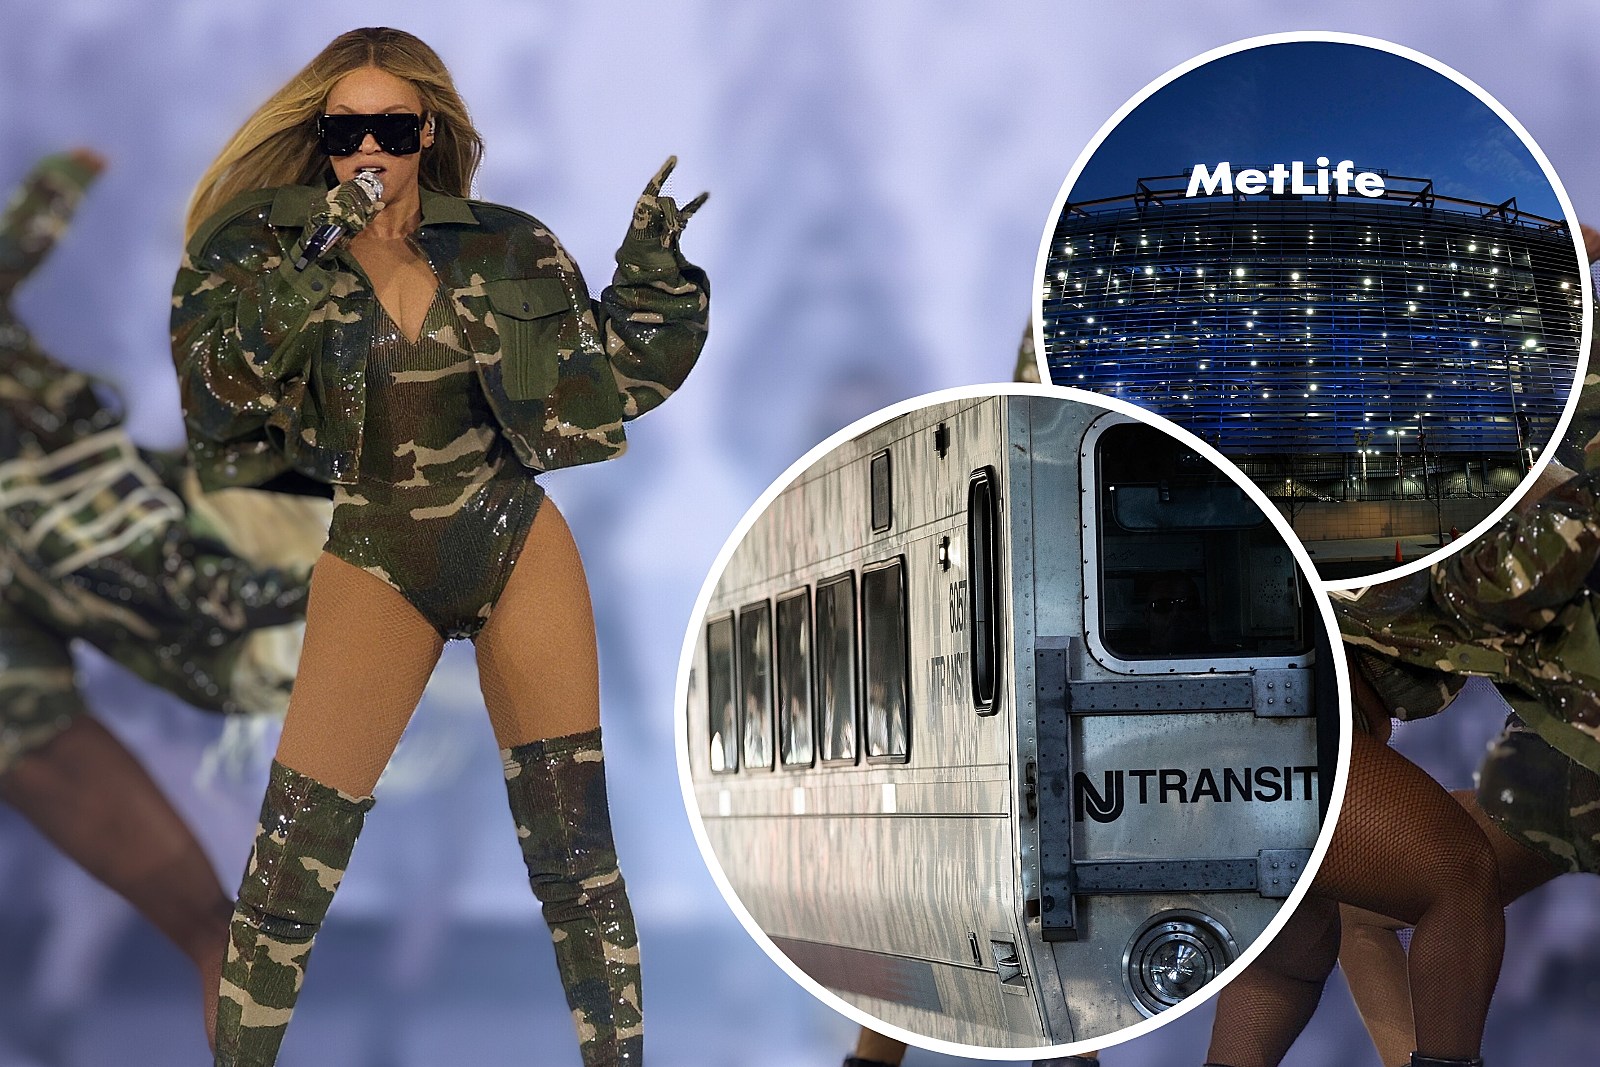 Beyoncé's Setlist for MetLife Stadium in NJ